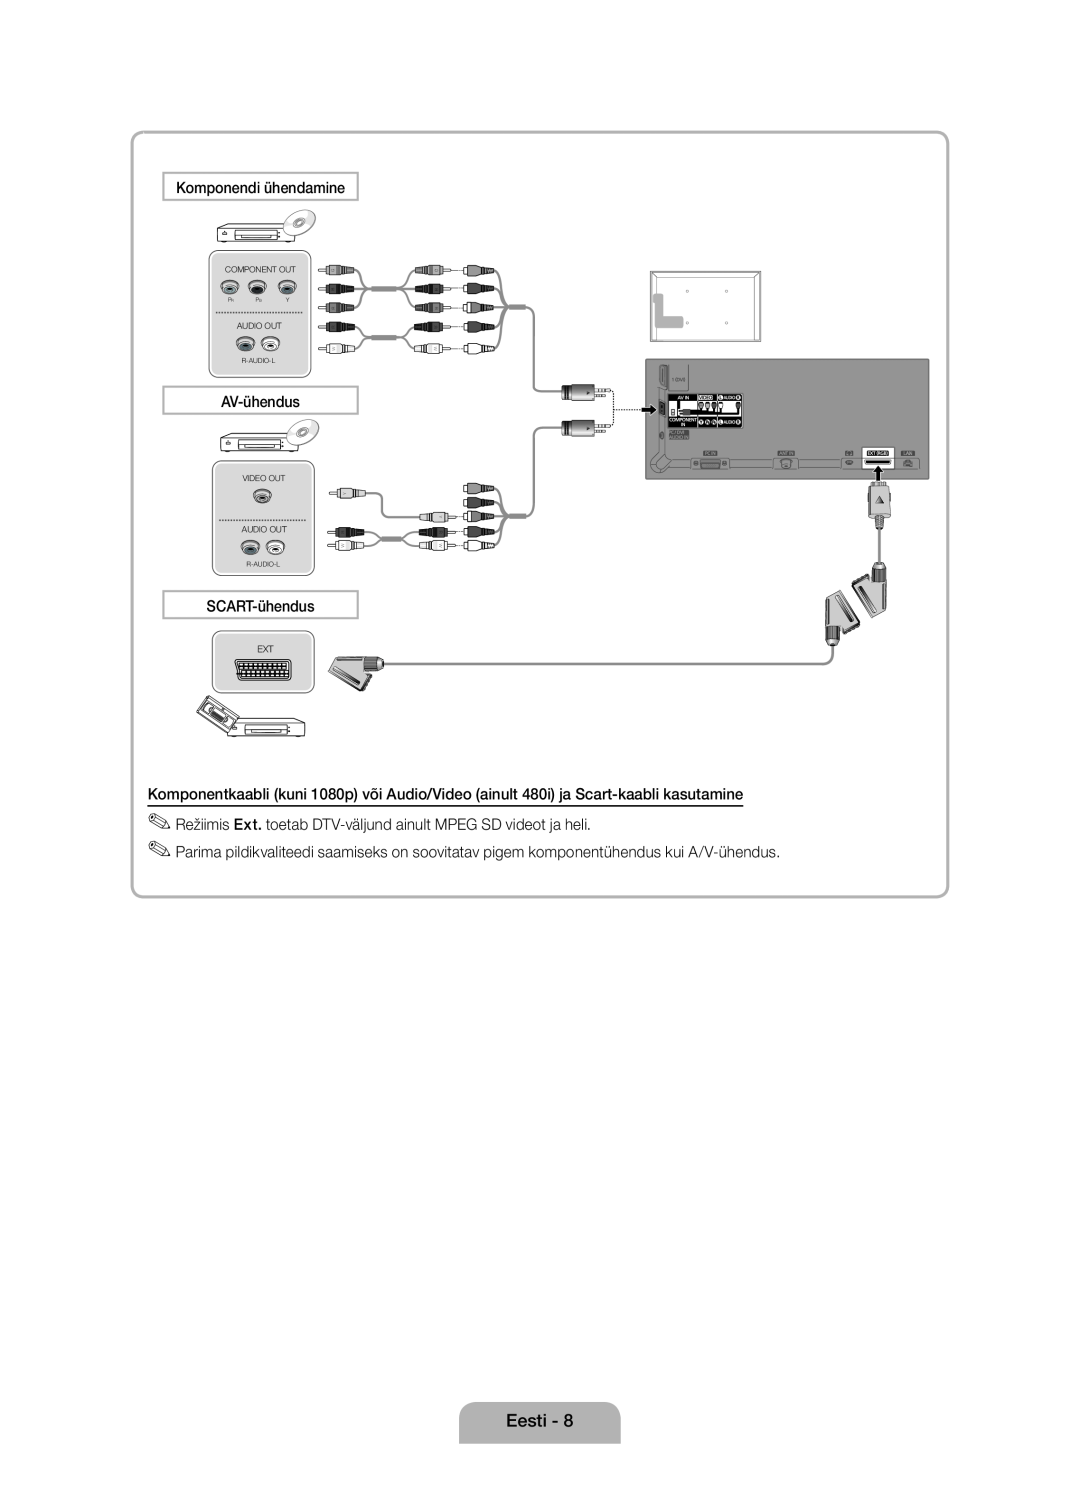 Samsung UE37D5000PWXXH, UE32D5000PWXZG Eesti, Komponendi ühendamine, AV-ühendus, SCART-ühendus, Component Out, Audio Out 